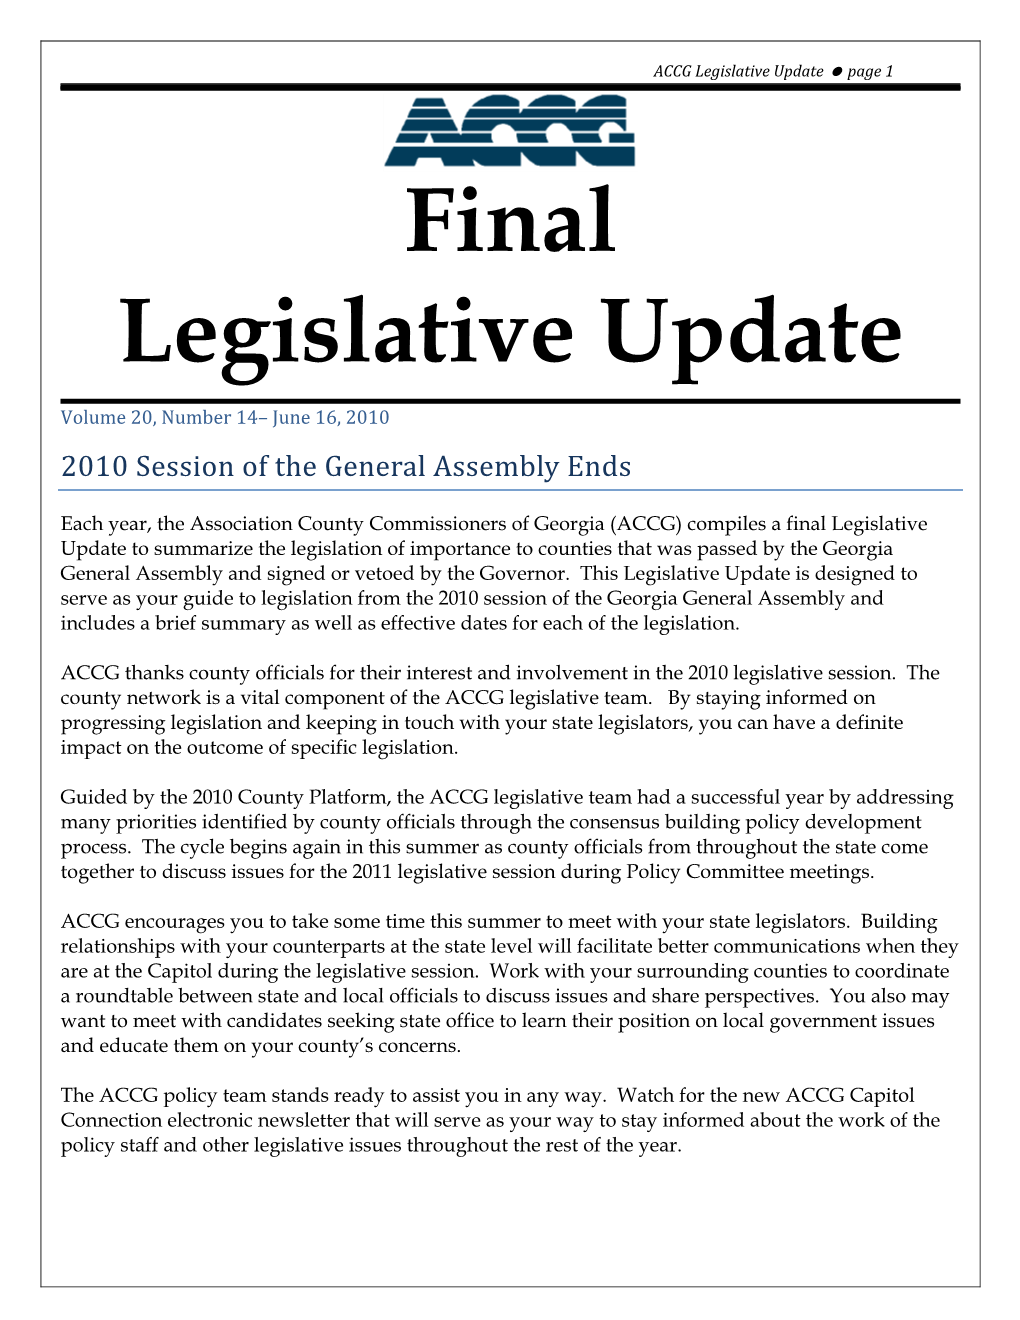 Final Legislative Update